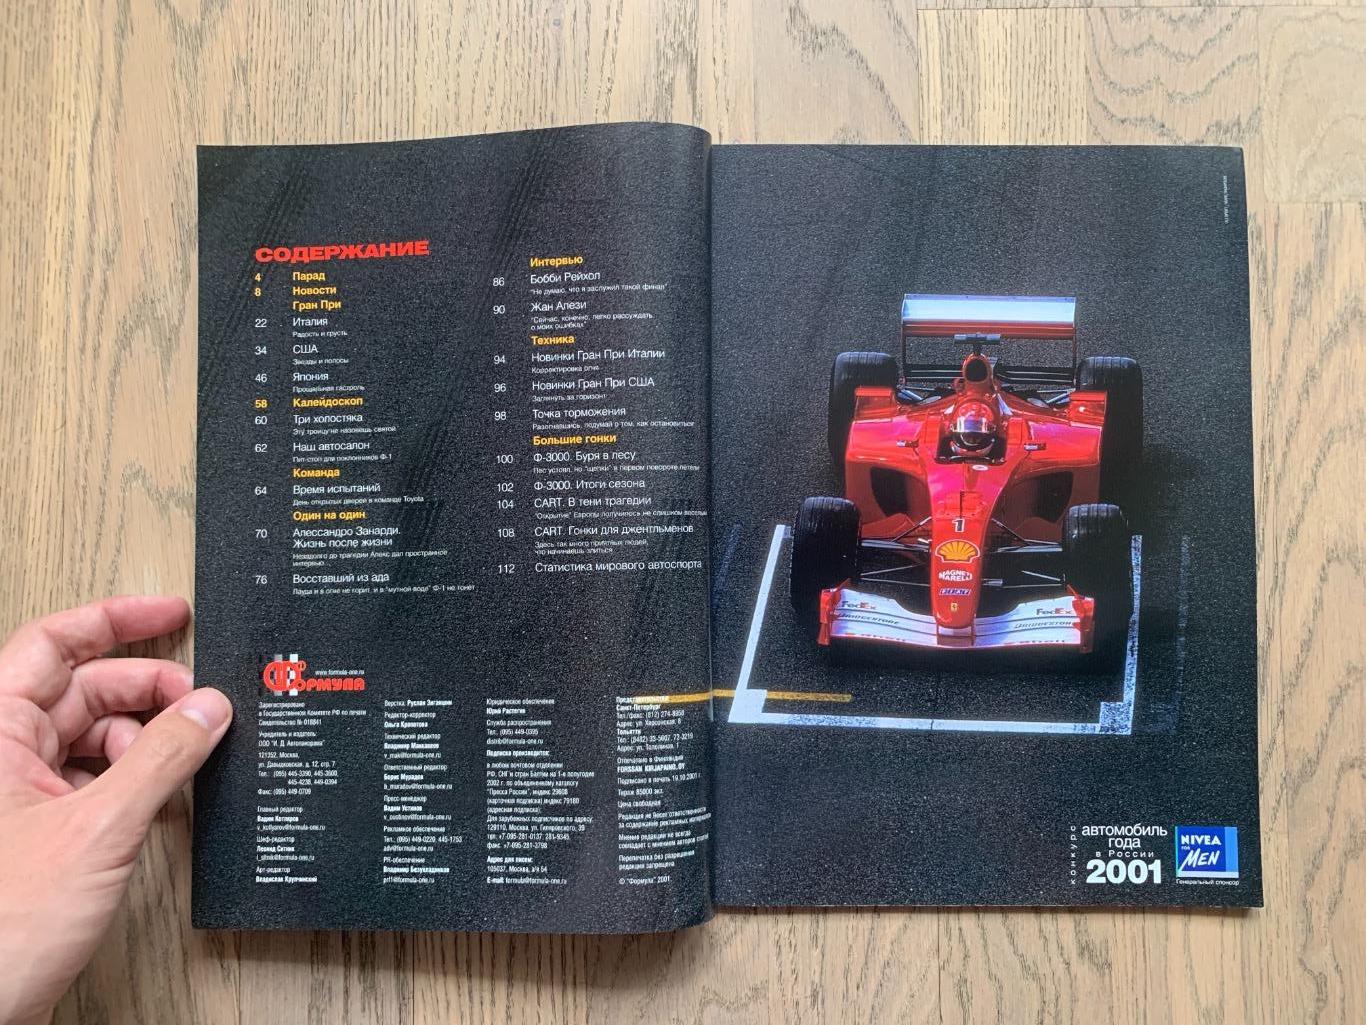 Журнал Формула 1 (Formula Magazine) / ноябрь 2001 1